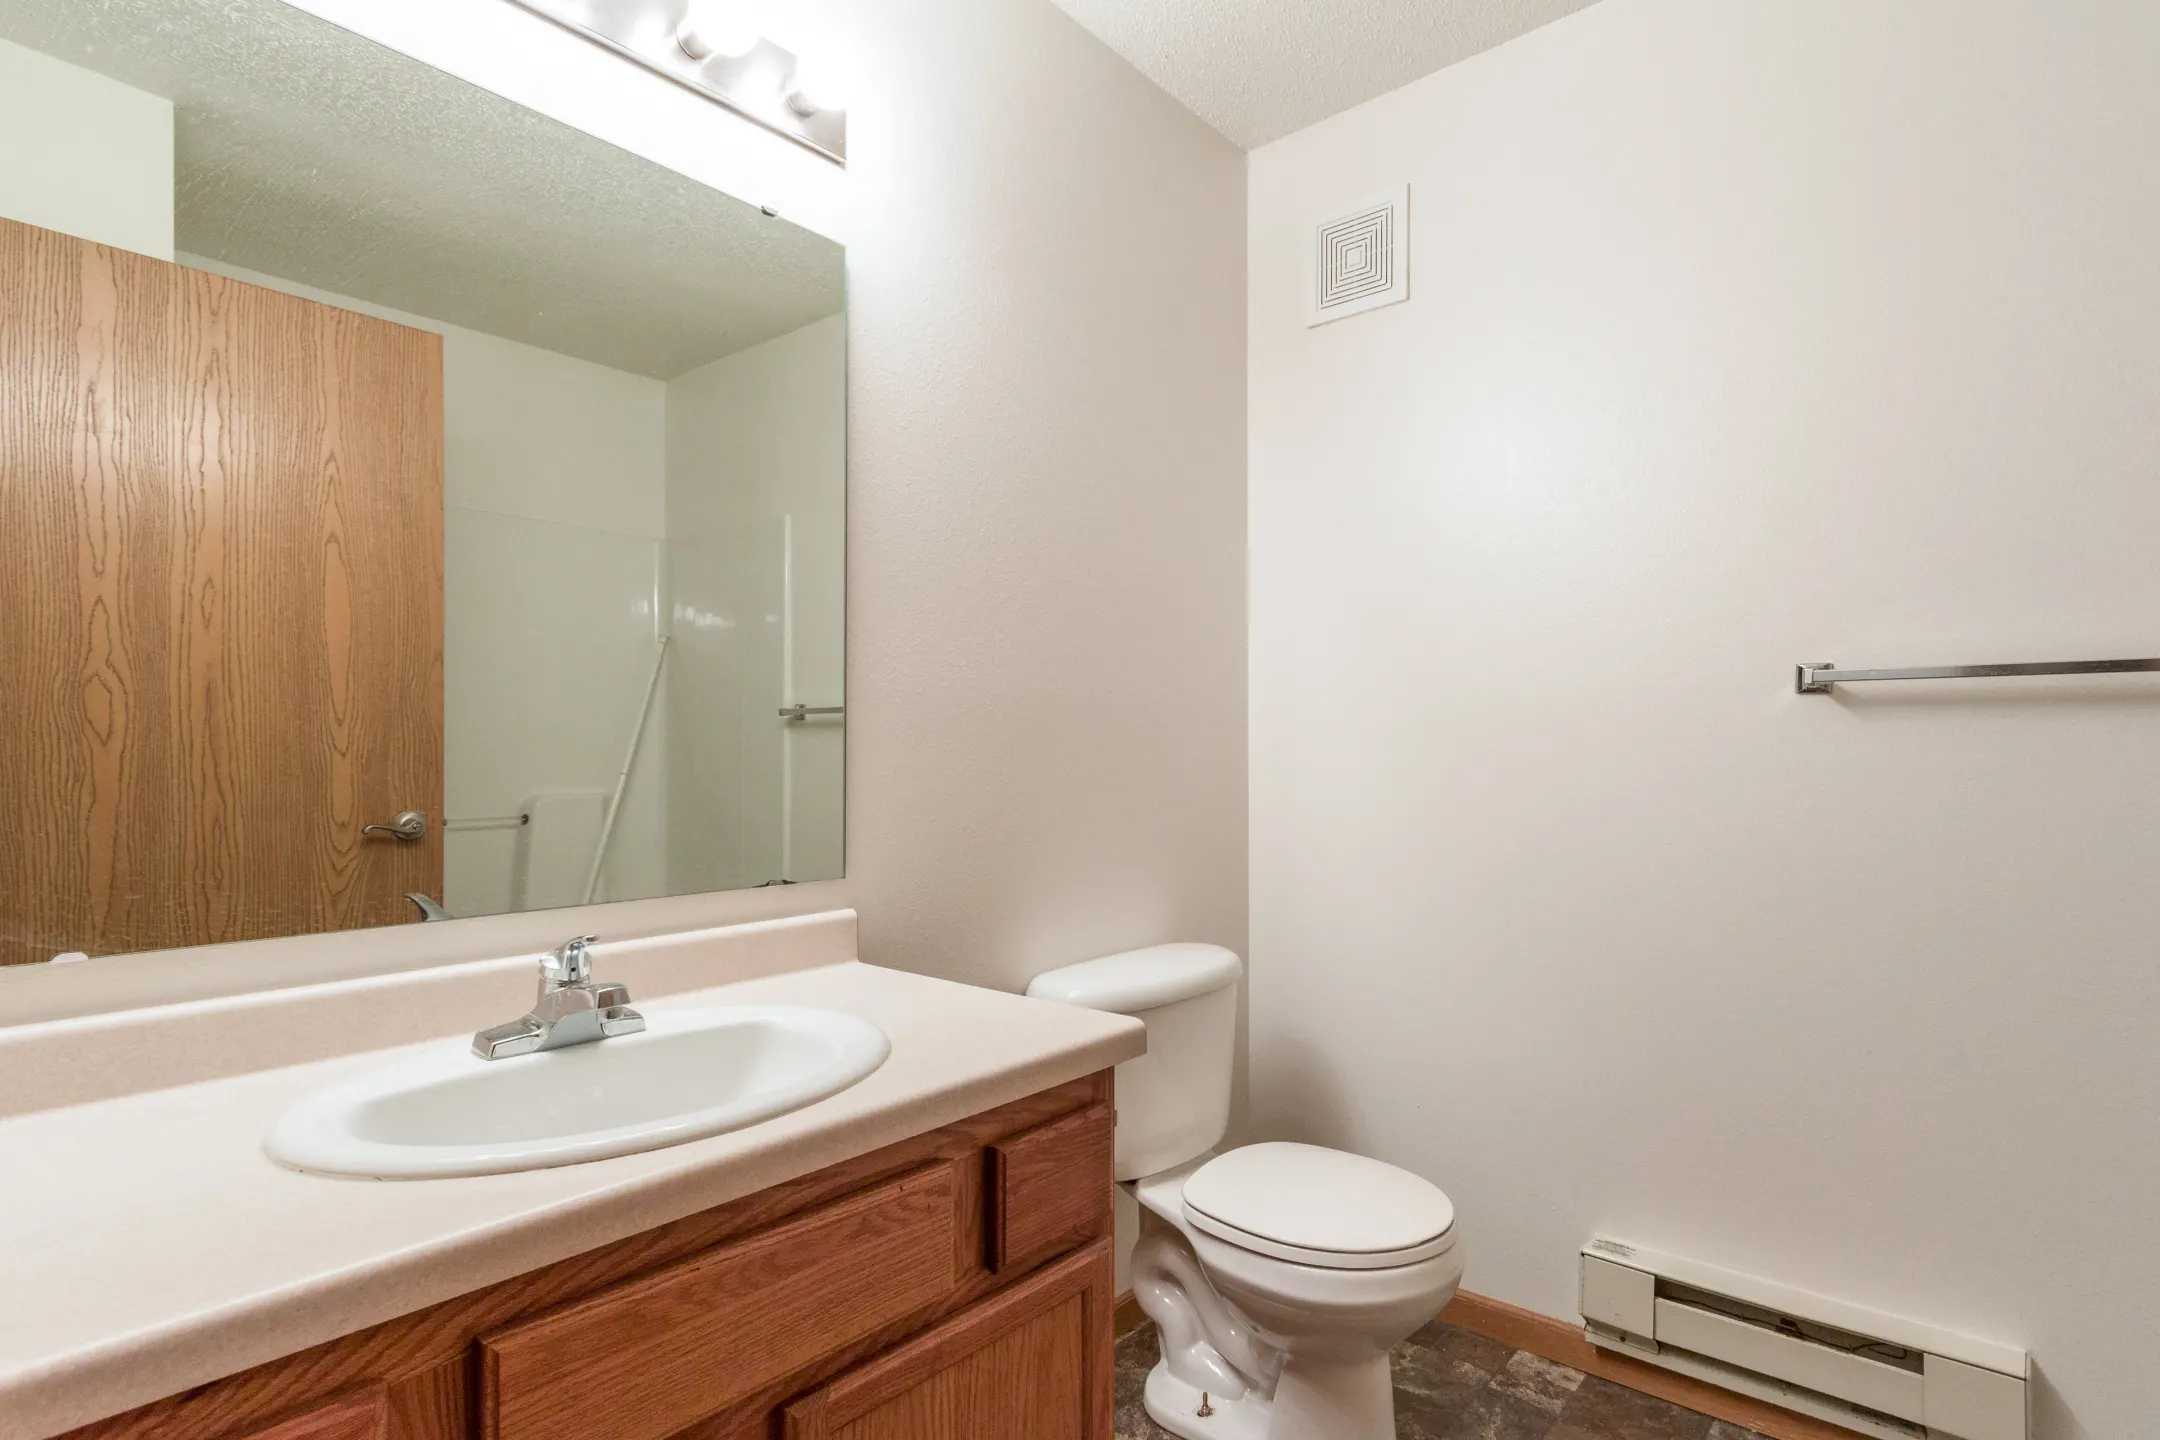 Bathroom - Central Park Apartments - Fargo, ND